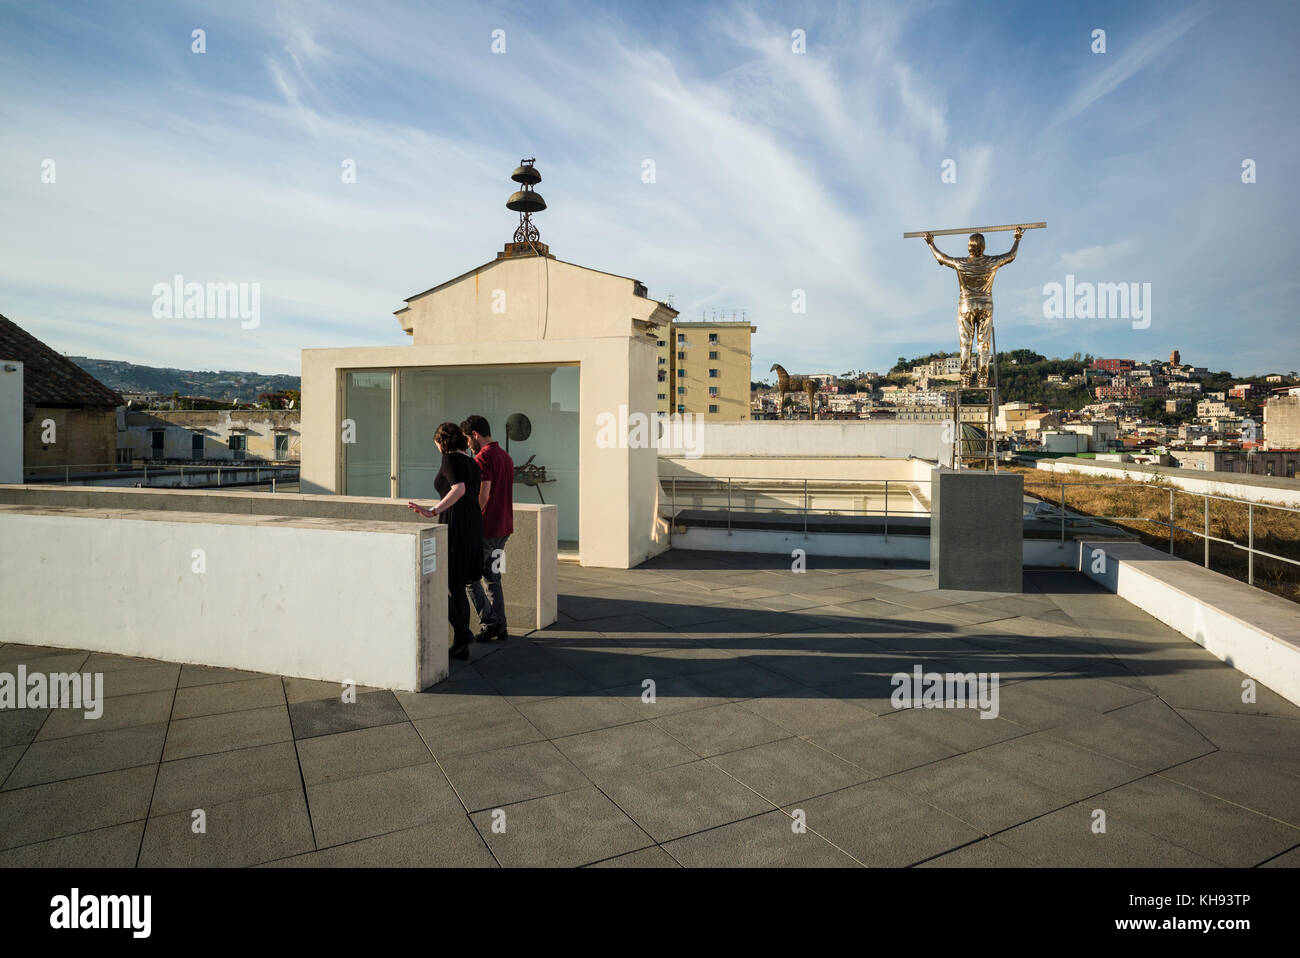 Naples. L'Italie. MADRE Museo d'Arte Contemporanea Donnaregina, musée d'art contemporain, terrasse sur le toit avec la sculpture l'homme mesurant les nuages, par Banque D'Images